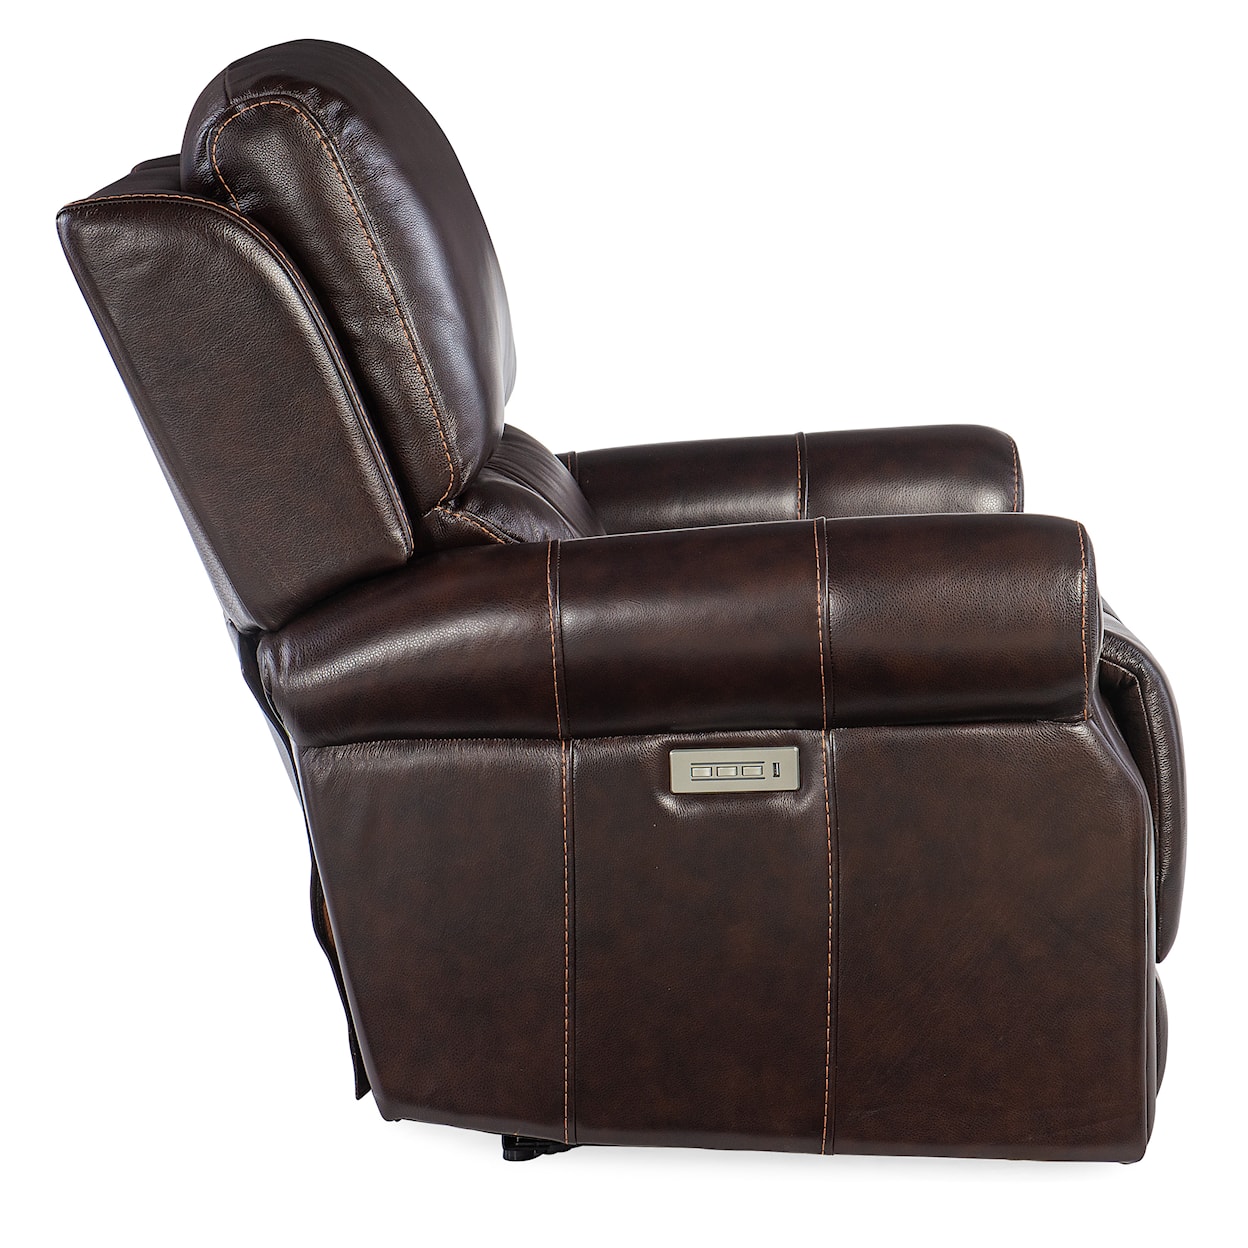 Hooker Furniture Reclining Chairs Eisley Power Recliner w/ Headrest & Lumbar